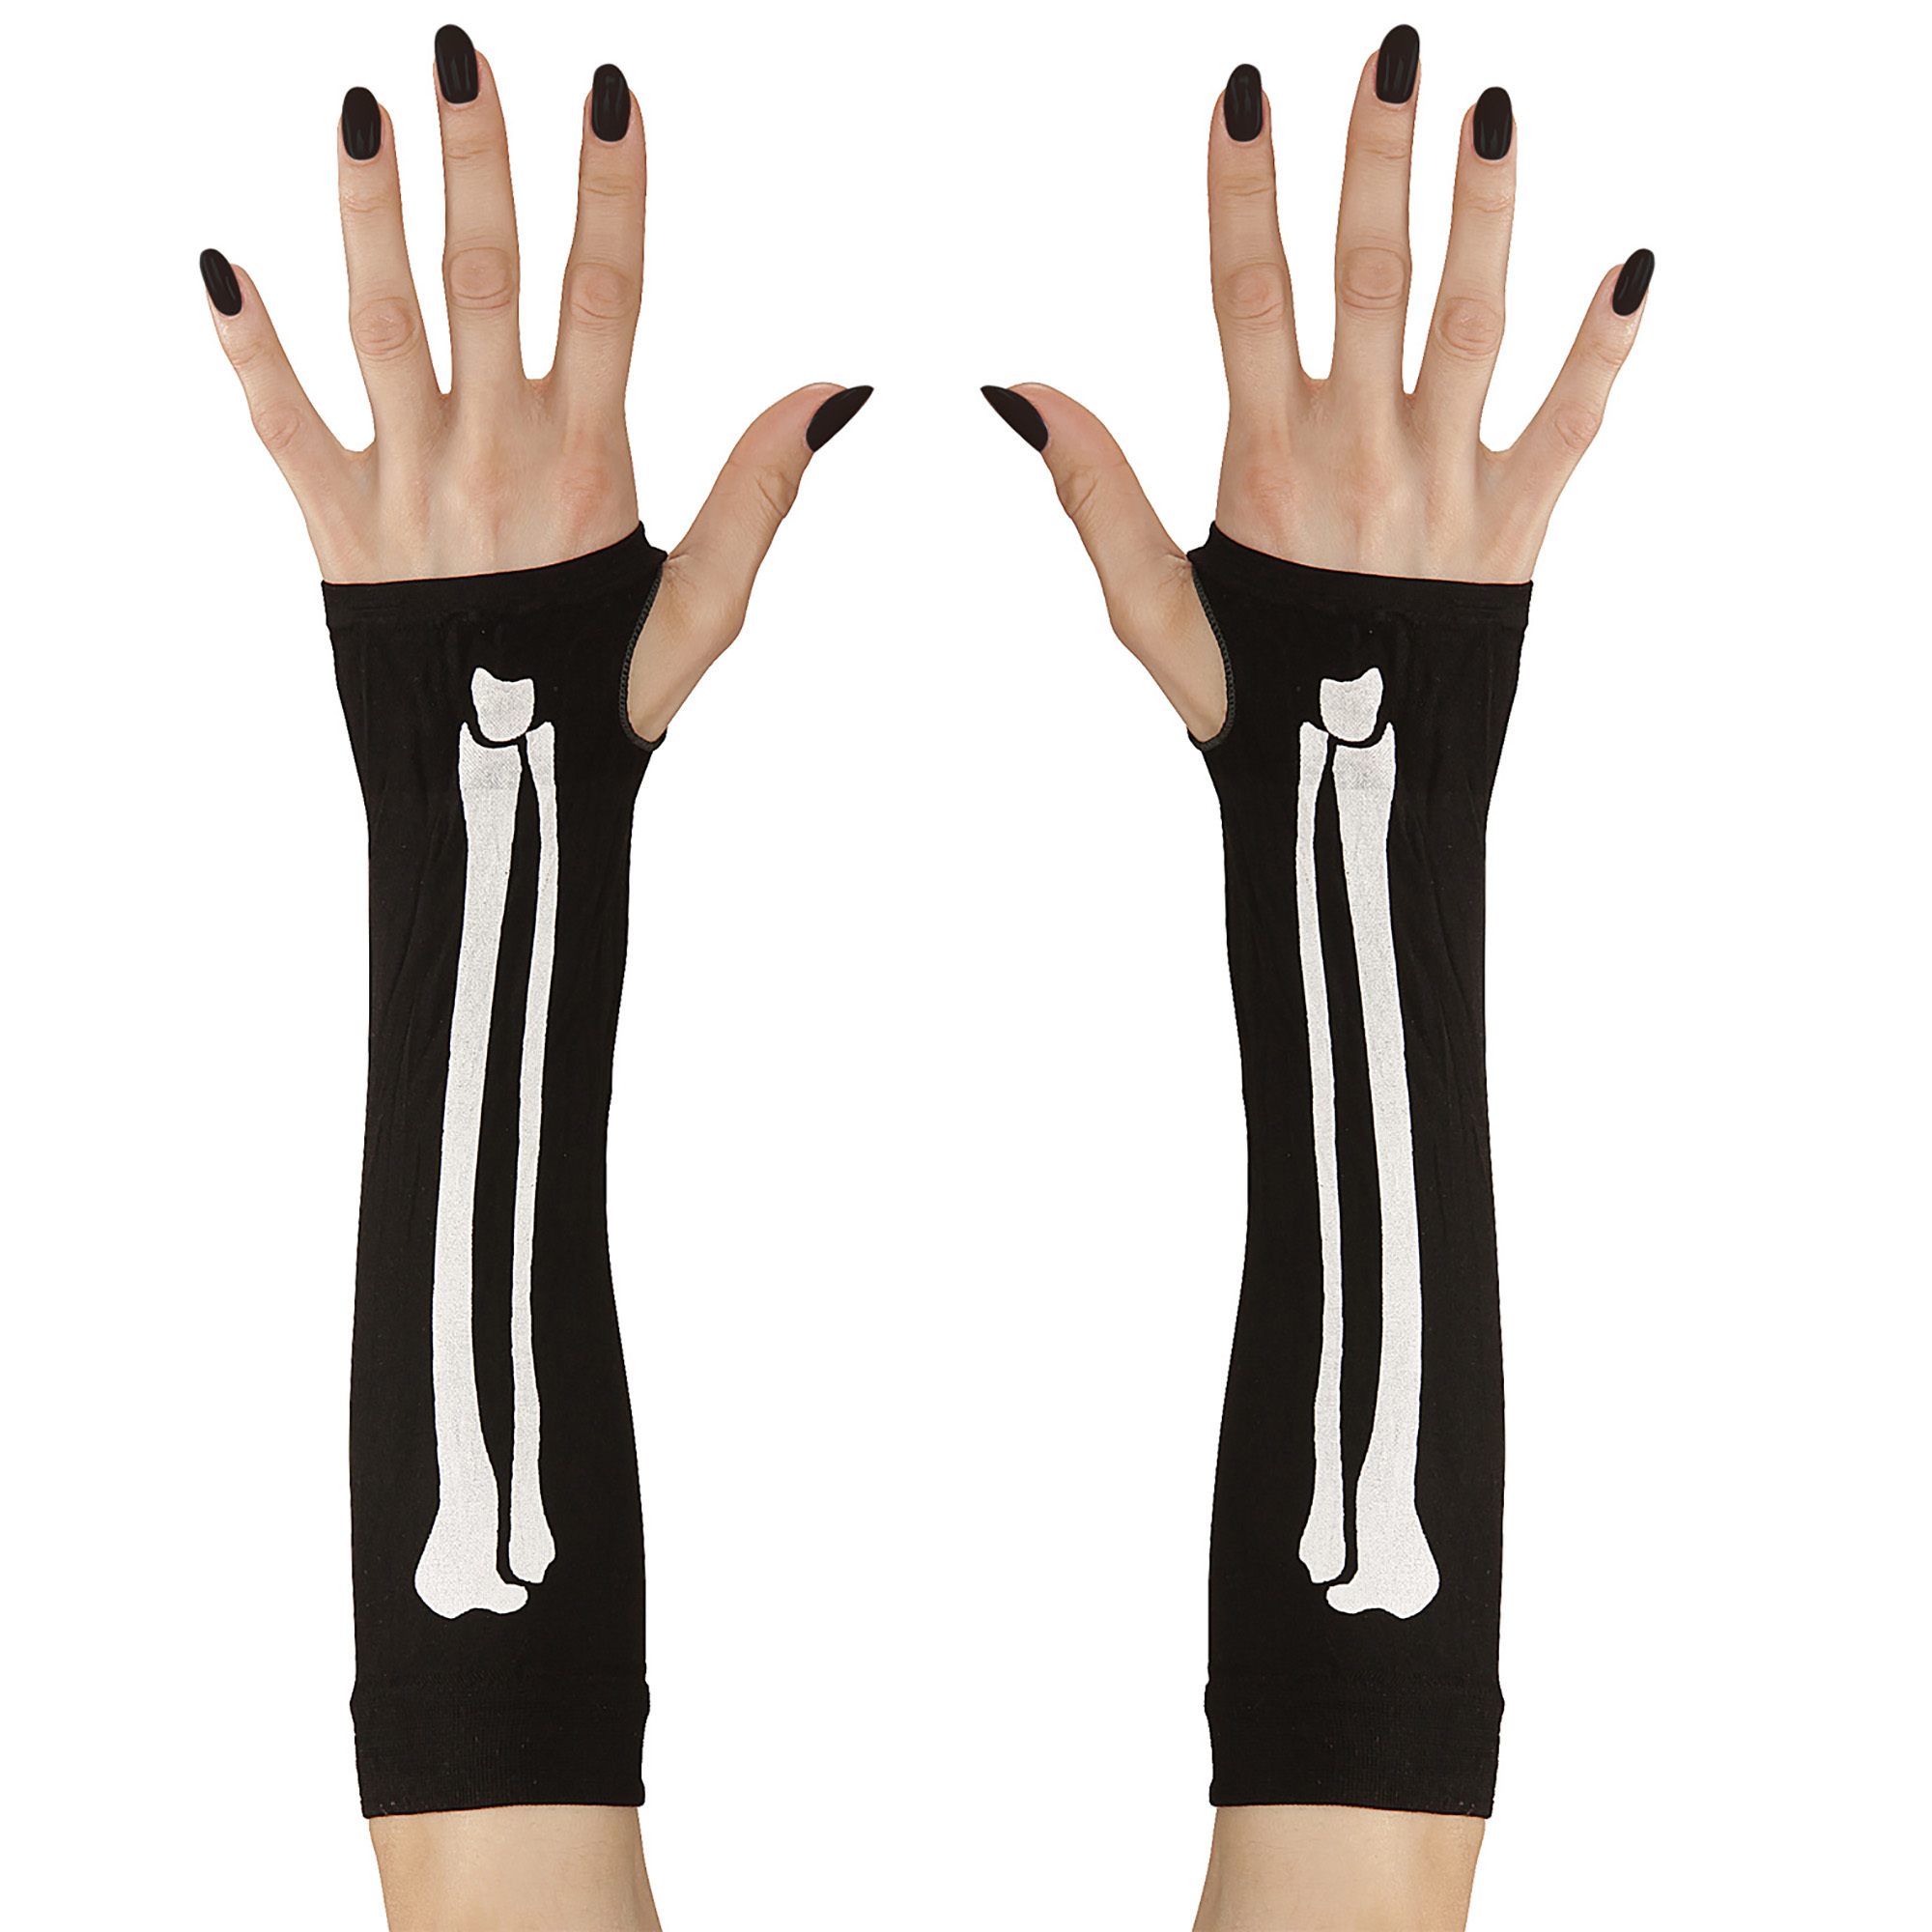 vingerlozen handschoen botten